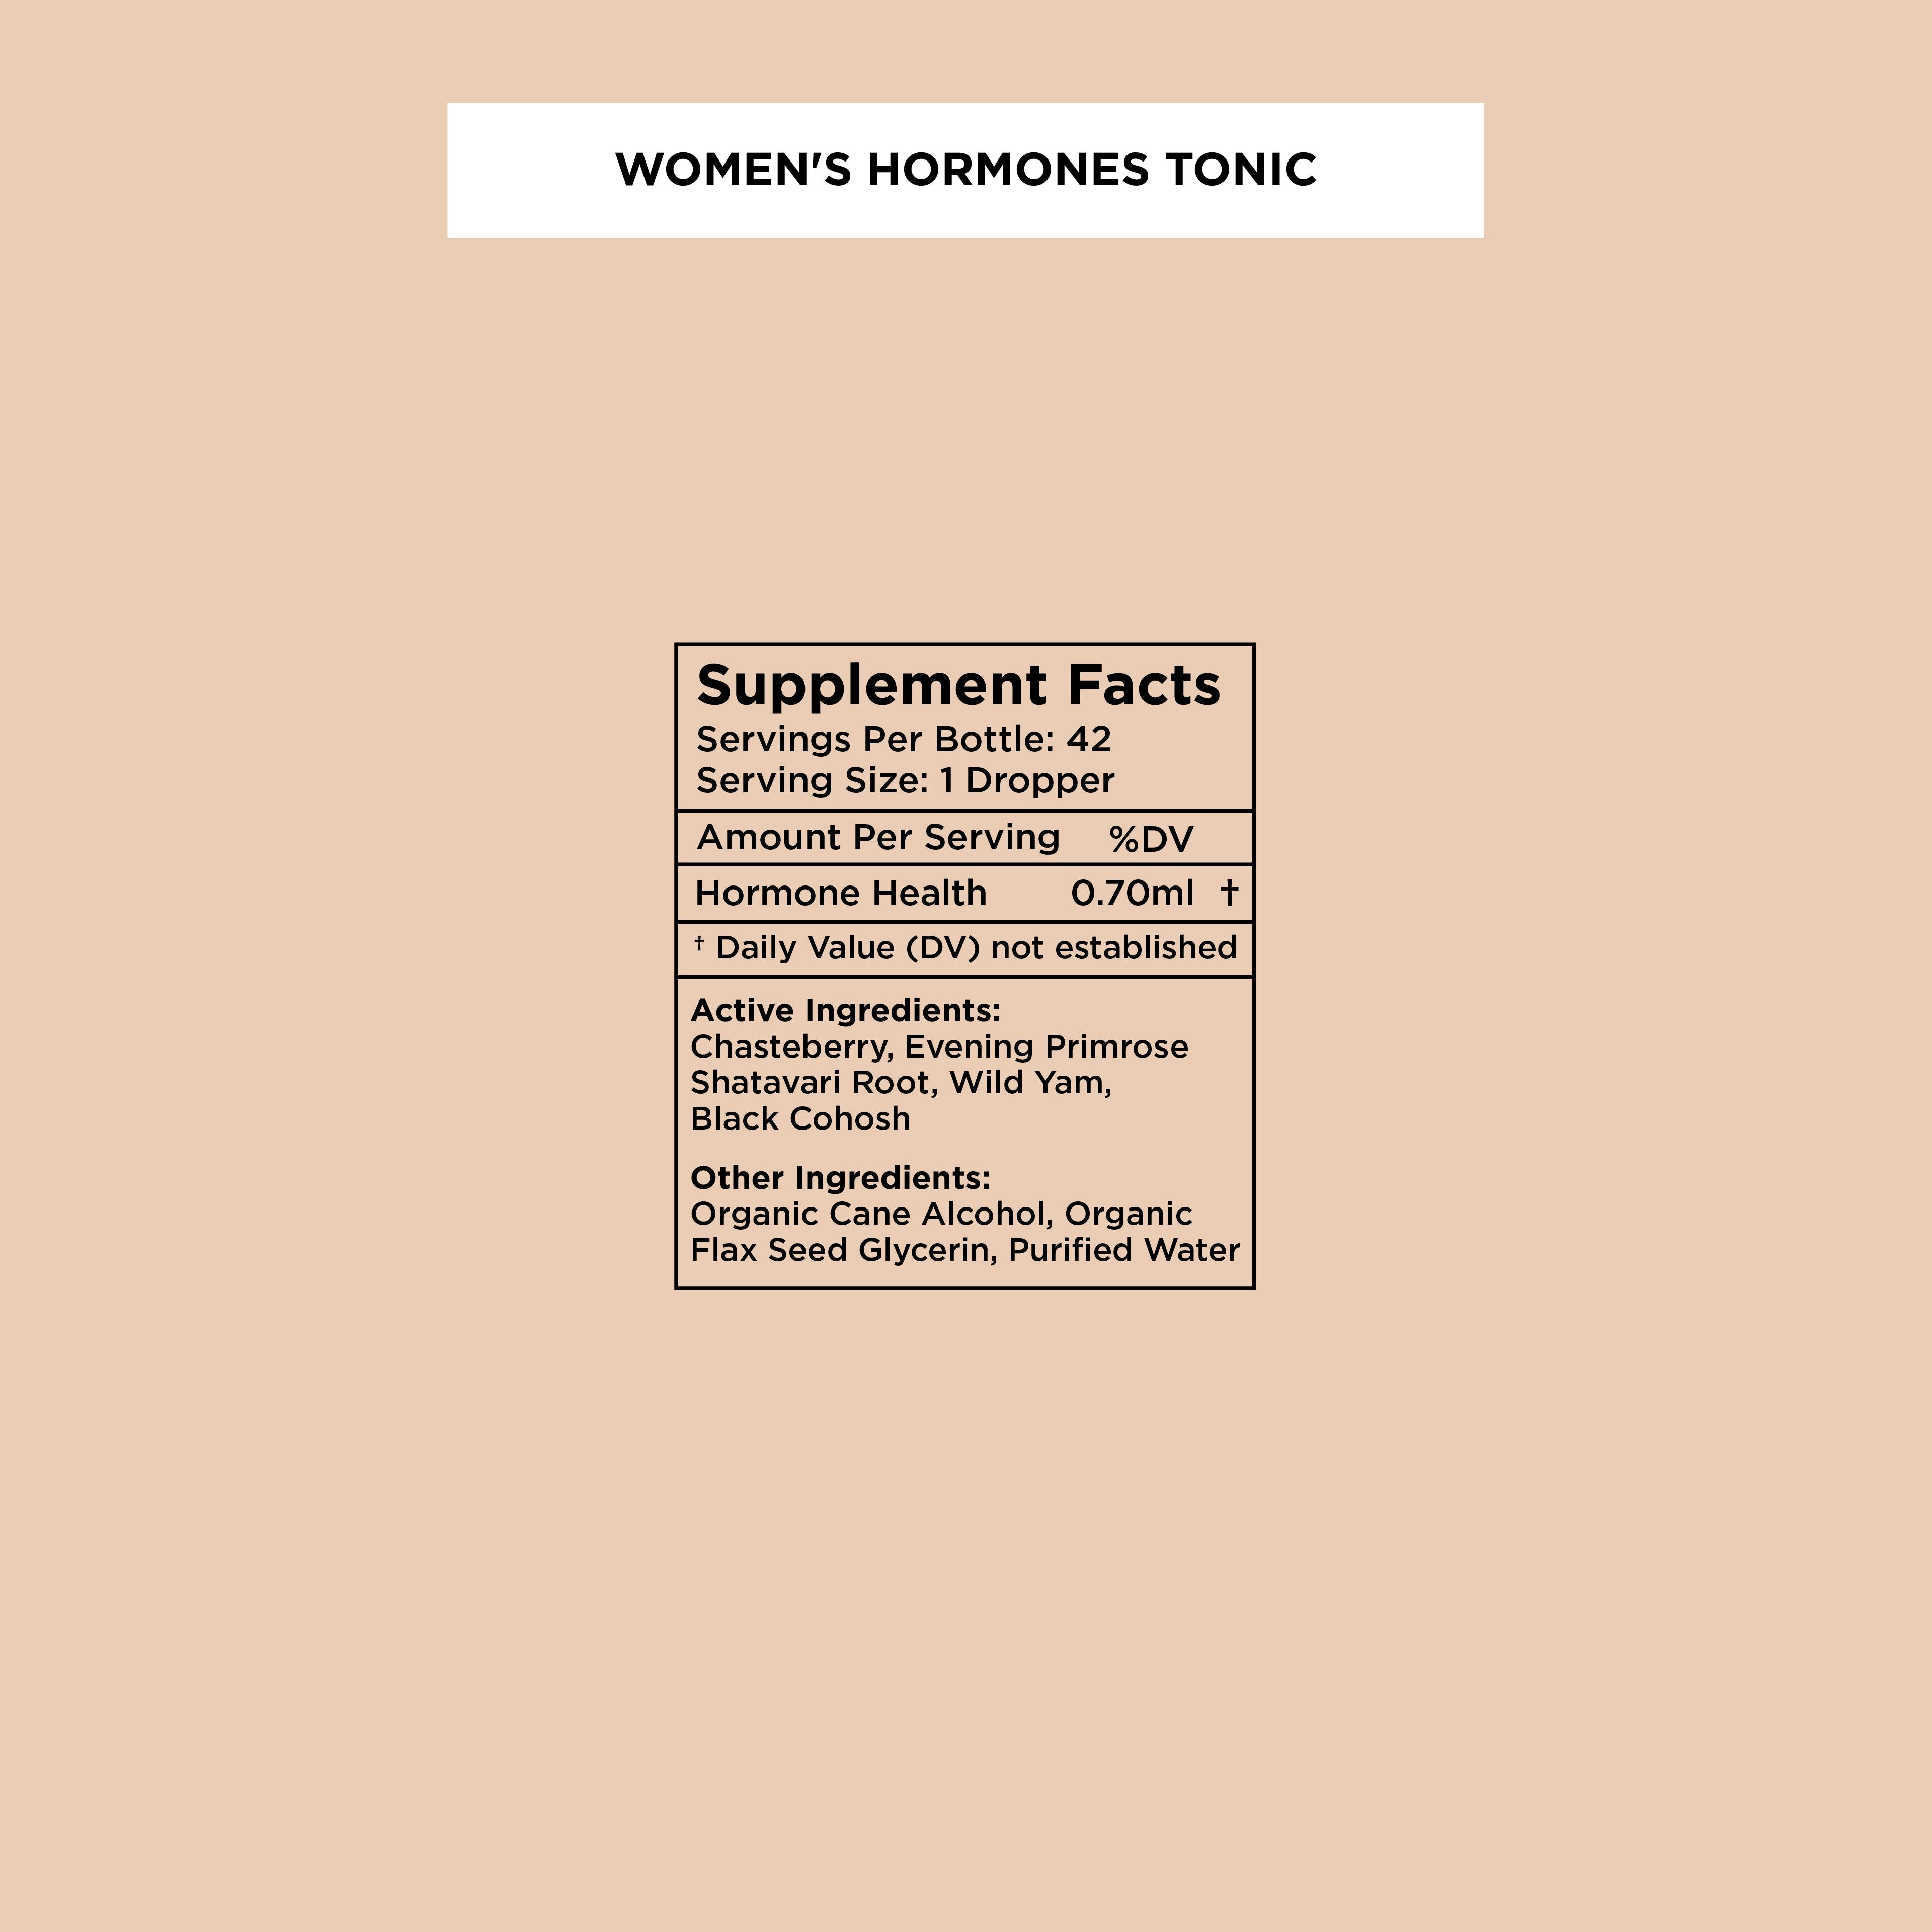 Women's Hormones Tonic